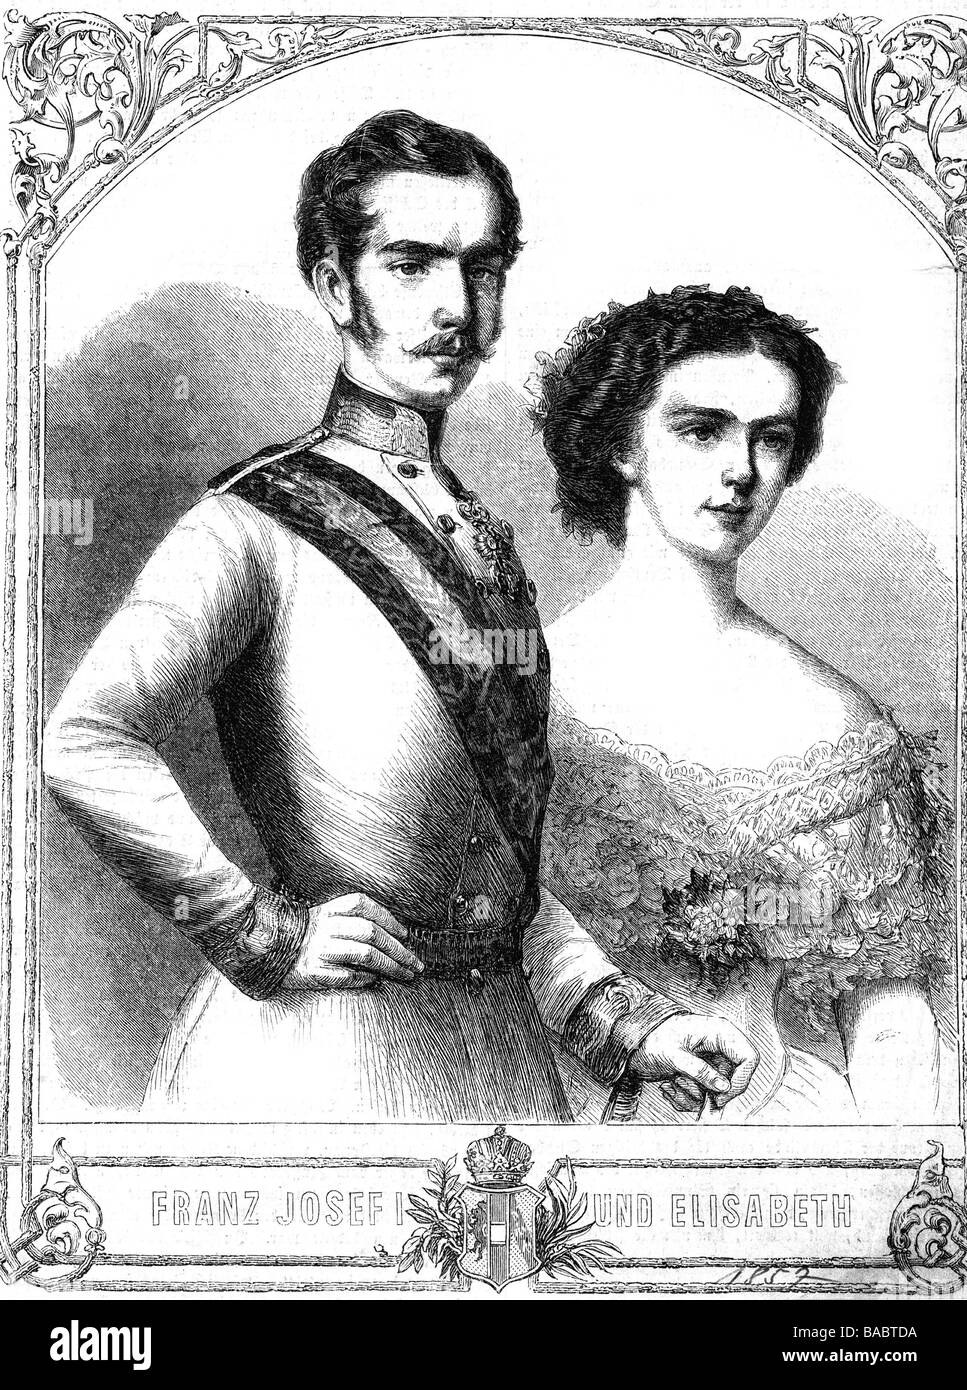 Franz Joseph i, 18.8.1830 - 21.11.1916, Imperatore d'Austria 2.12.1848 - 21.11.1916, con sua moglie, imperatrice Consort Elisabeth, incisione in legno, 1857, Foto Stock